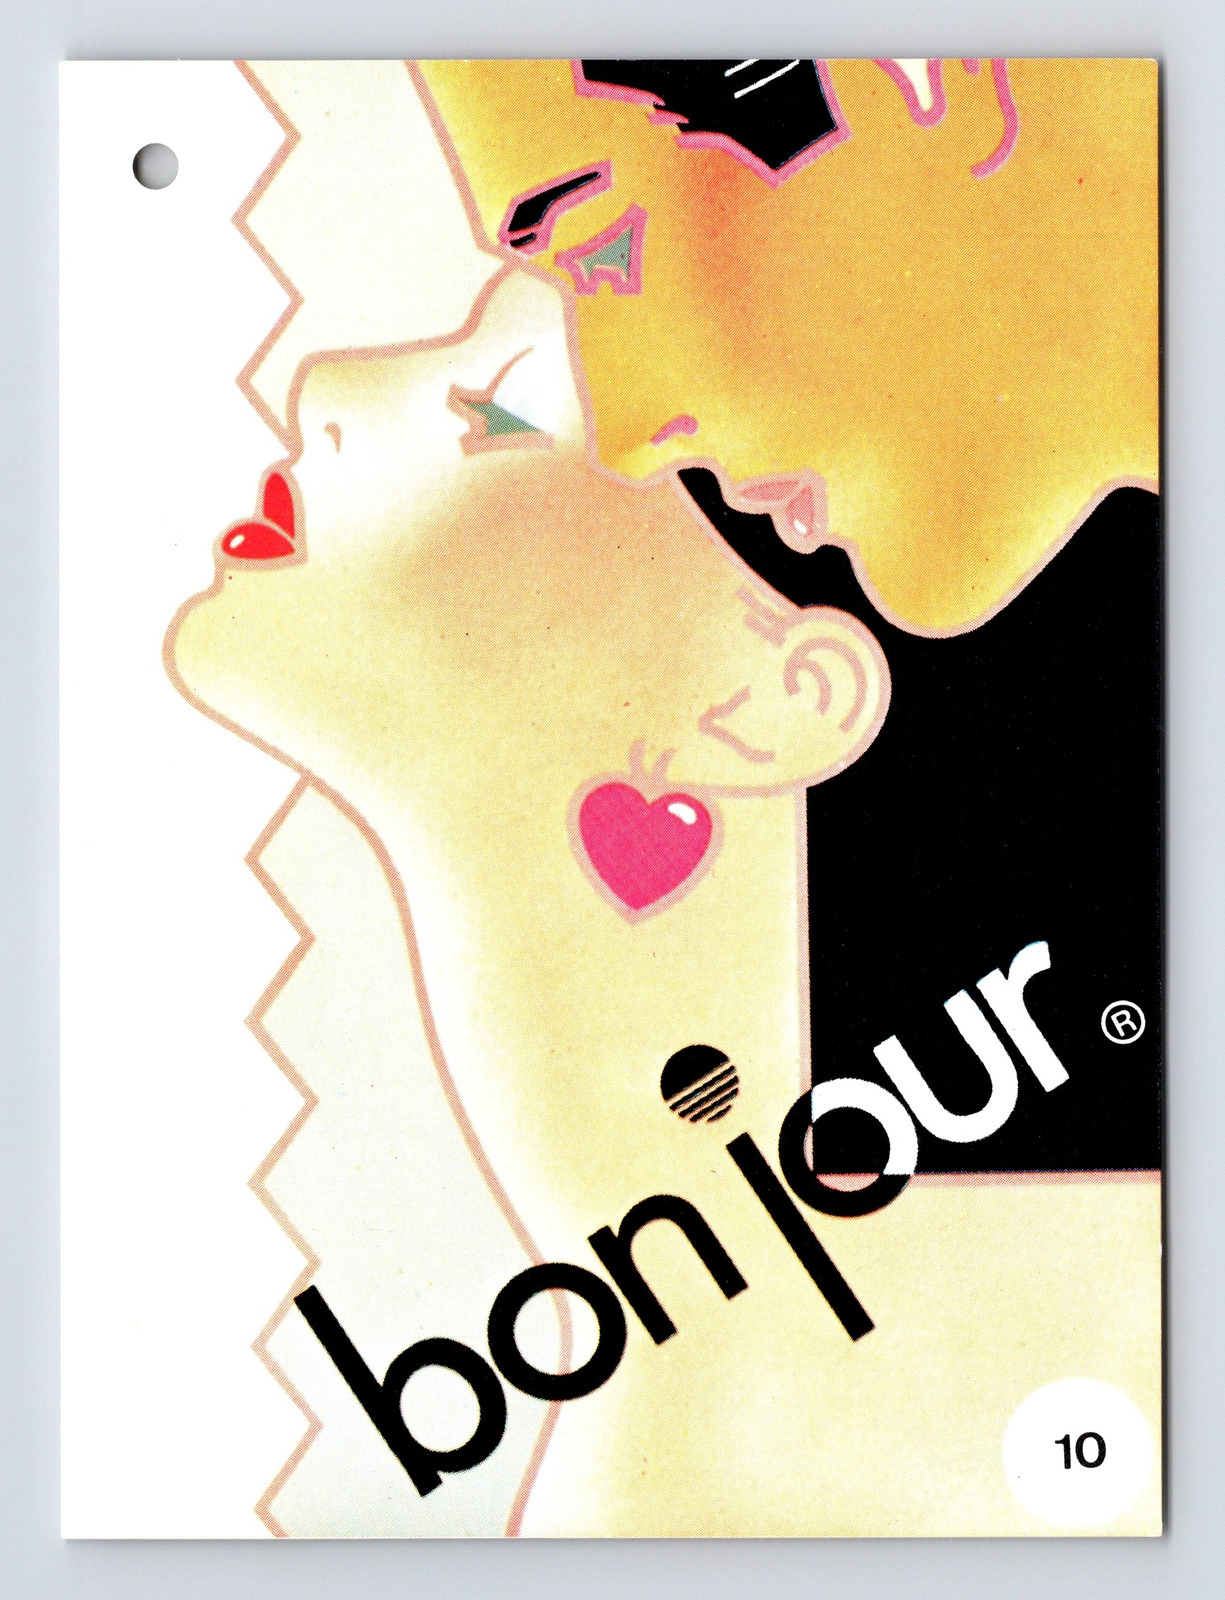 BonJour 10 Graphic Design Study Bon Jour Postcard